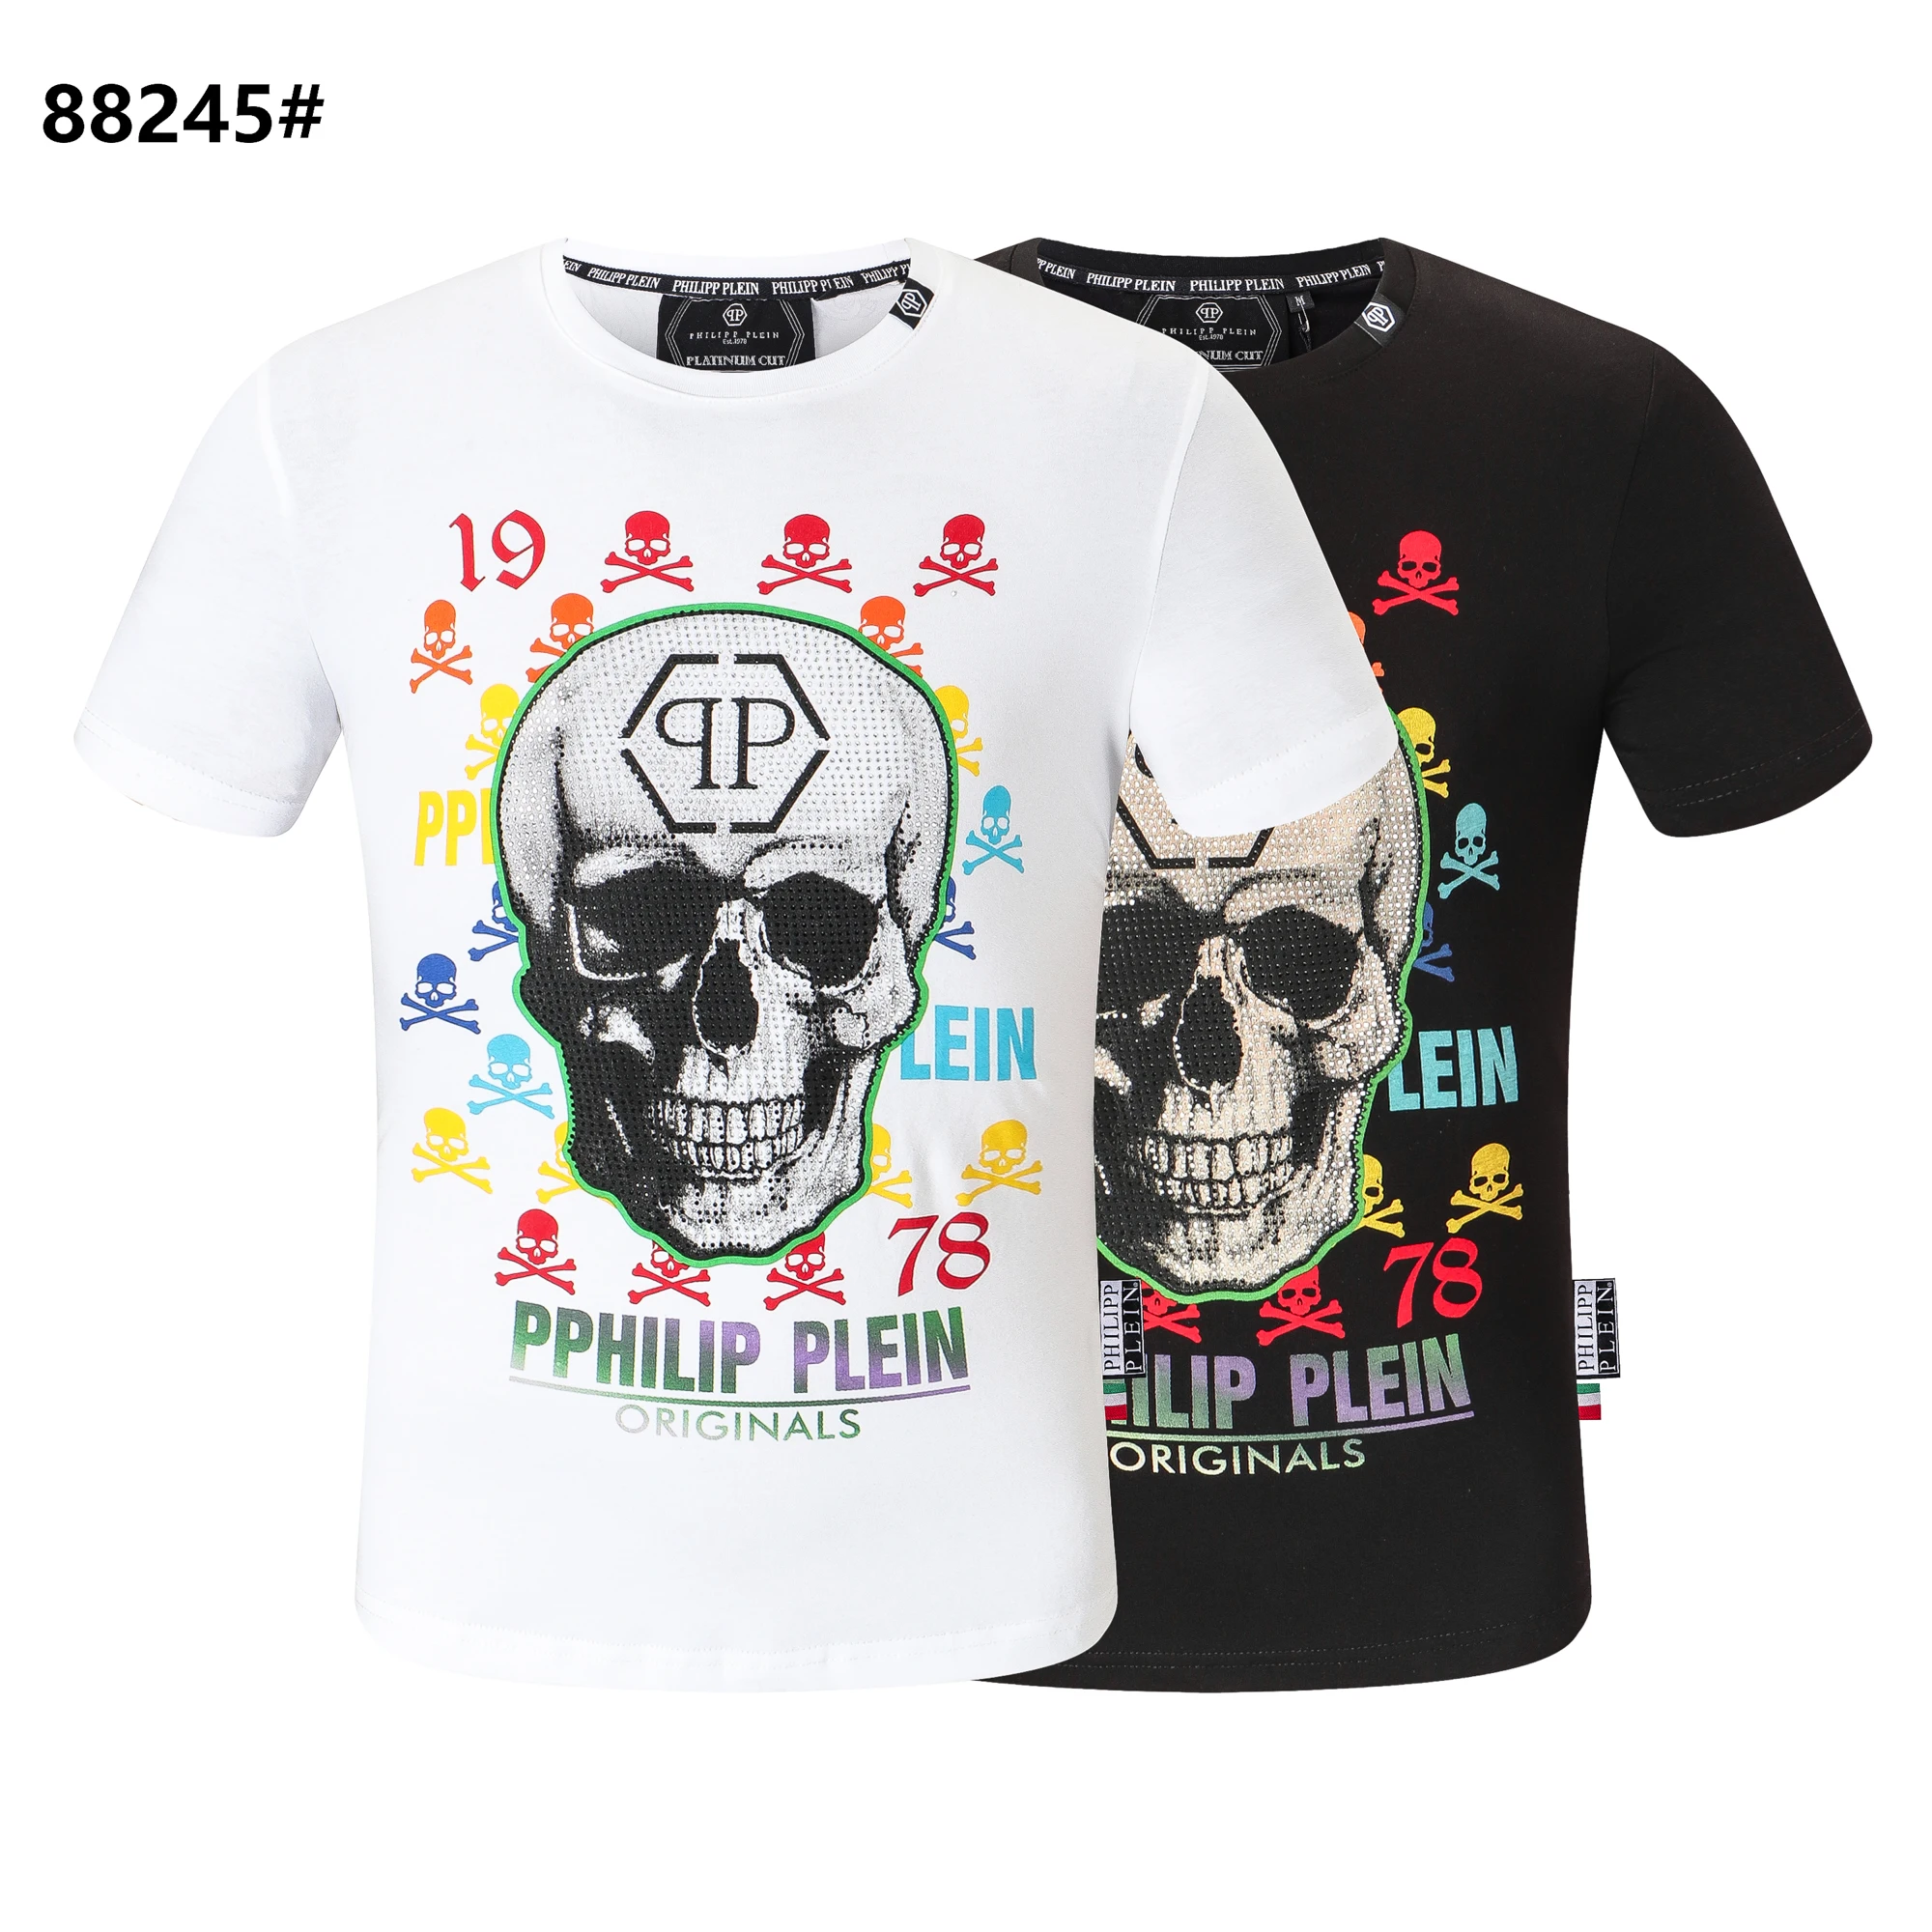 philipp plein nuevas camisetas para hombre – Compra philipp plein camisetas para con envío gratis en AliExpress Mobile.